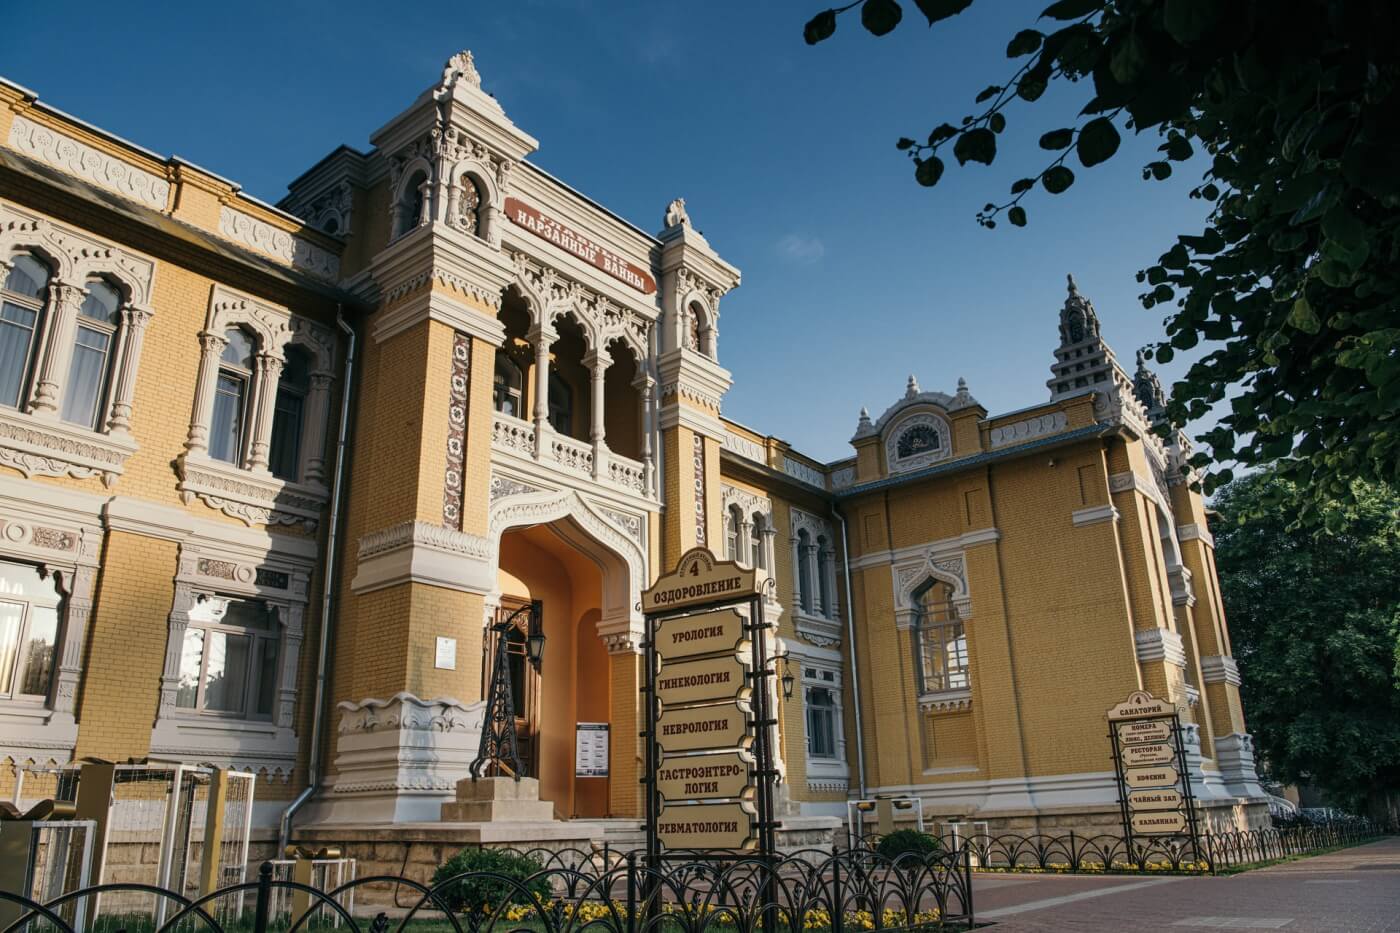 Архитектура отеля - украшение центра Кисловодска.